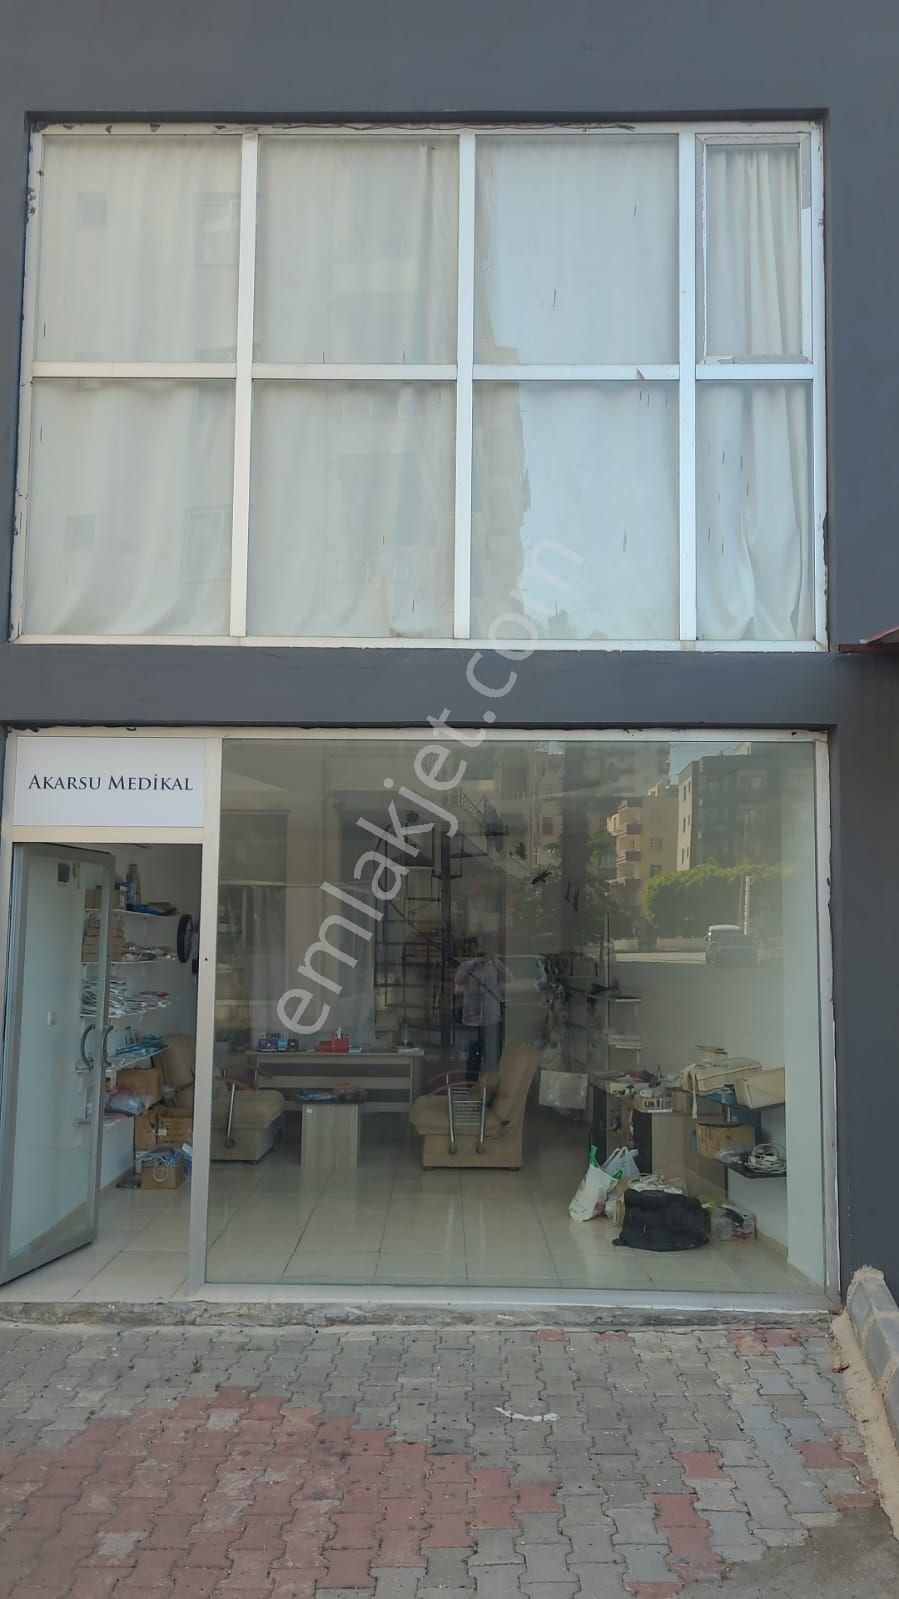 Erdemli Merkez Satılık Dükkan & Mağaza Erdemli merkezde satılık iki katlı dükkan 